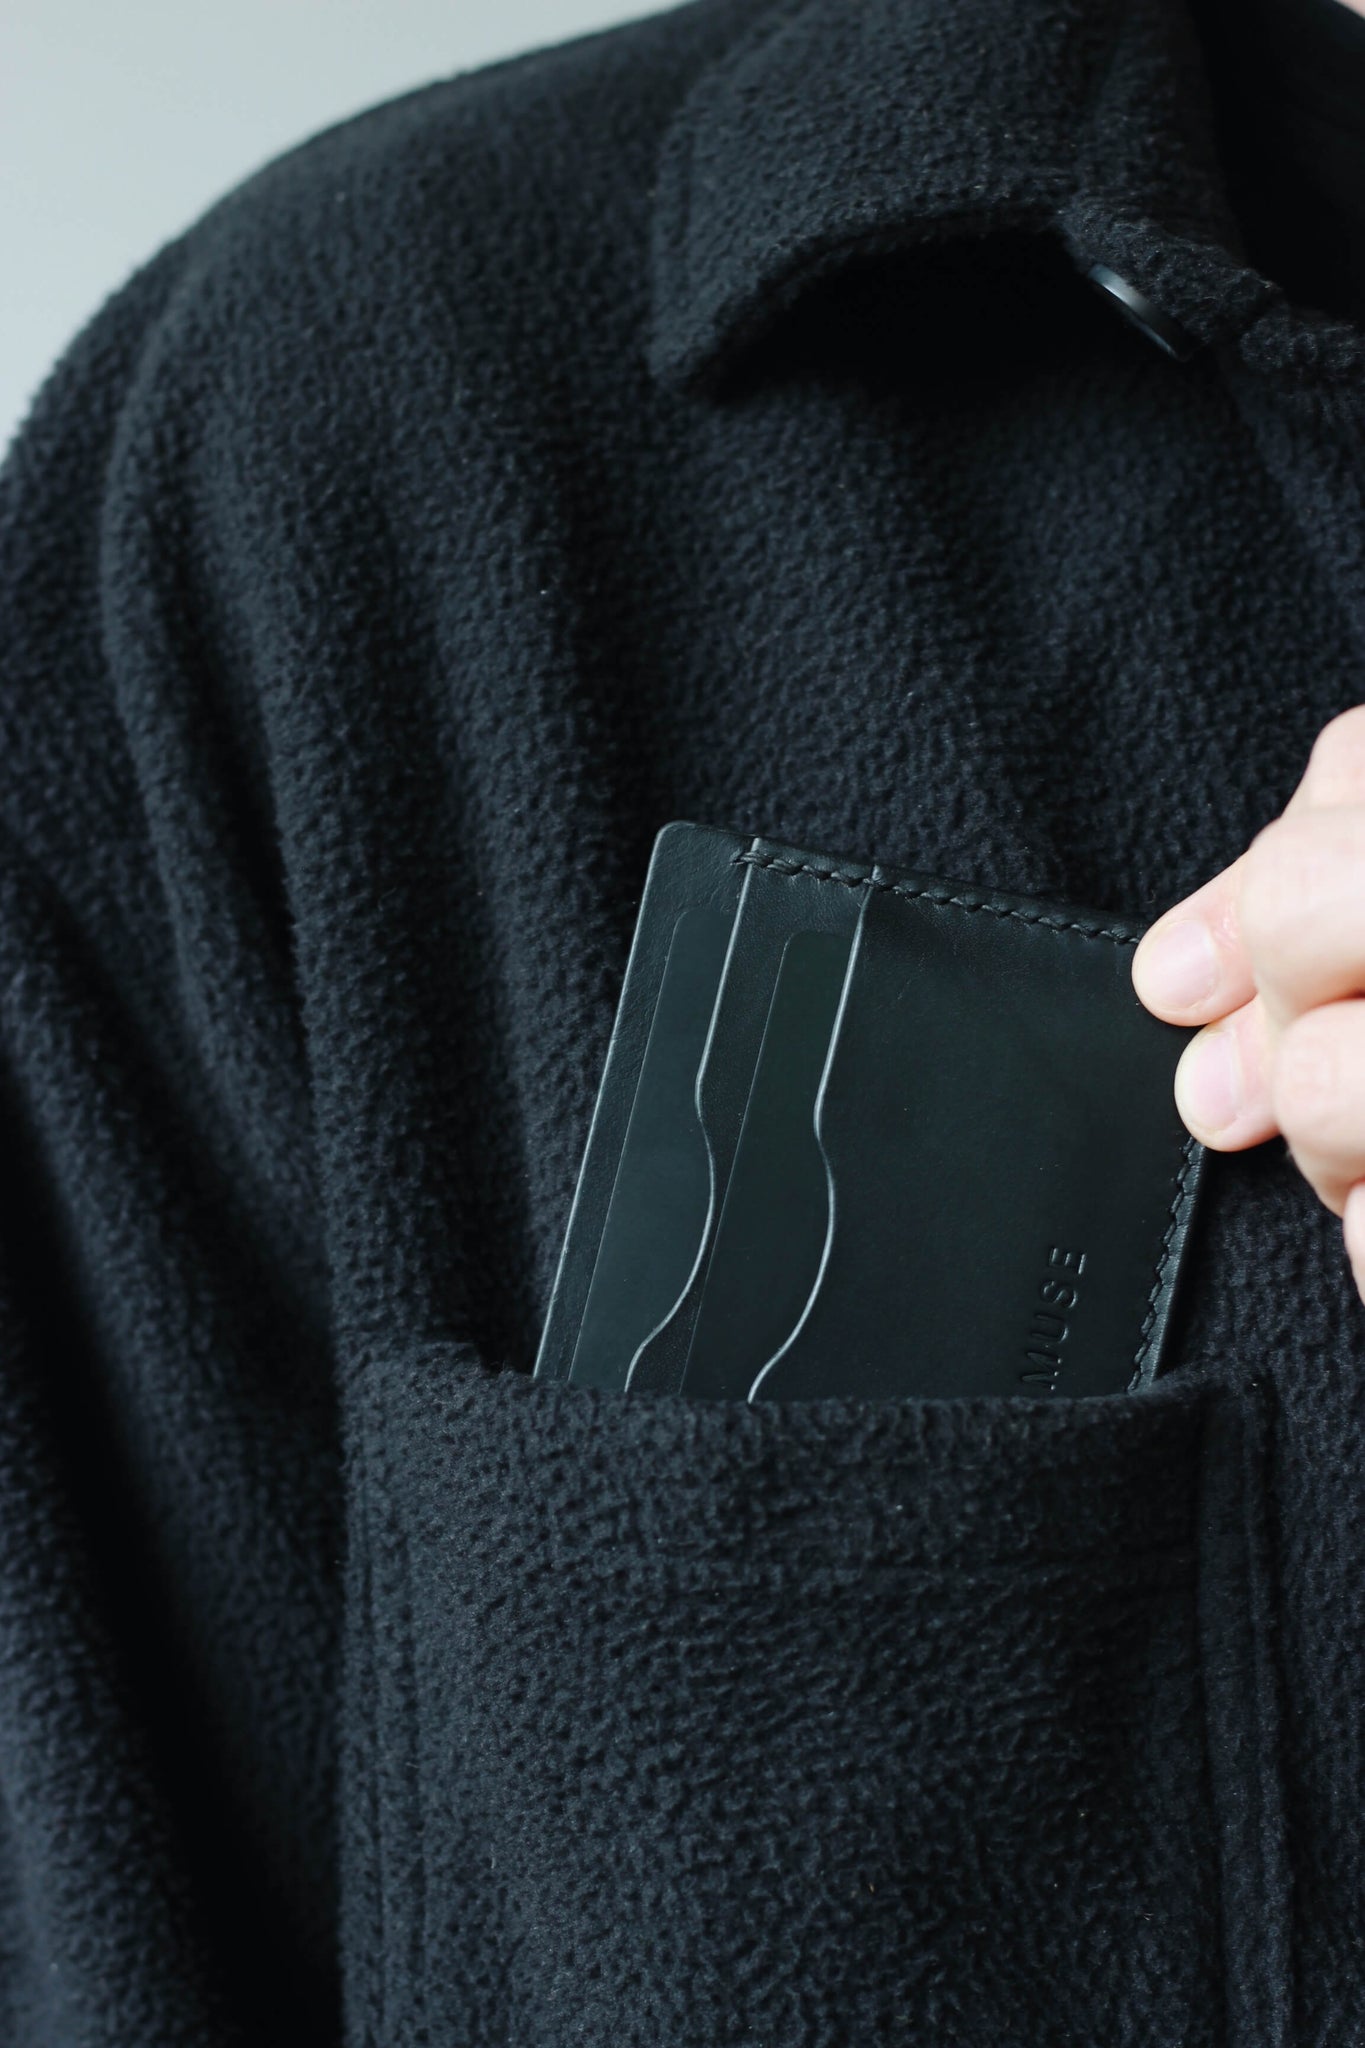 Kartenetui aus Leder in Schwarz wird in eine Brusttasche eines schwarzen Oberteils gesteckt.